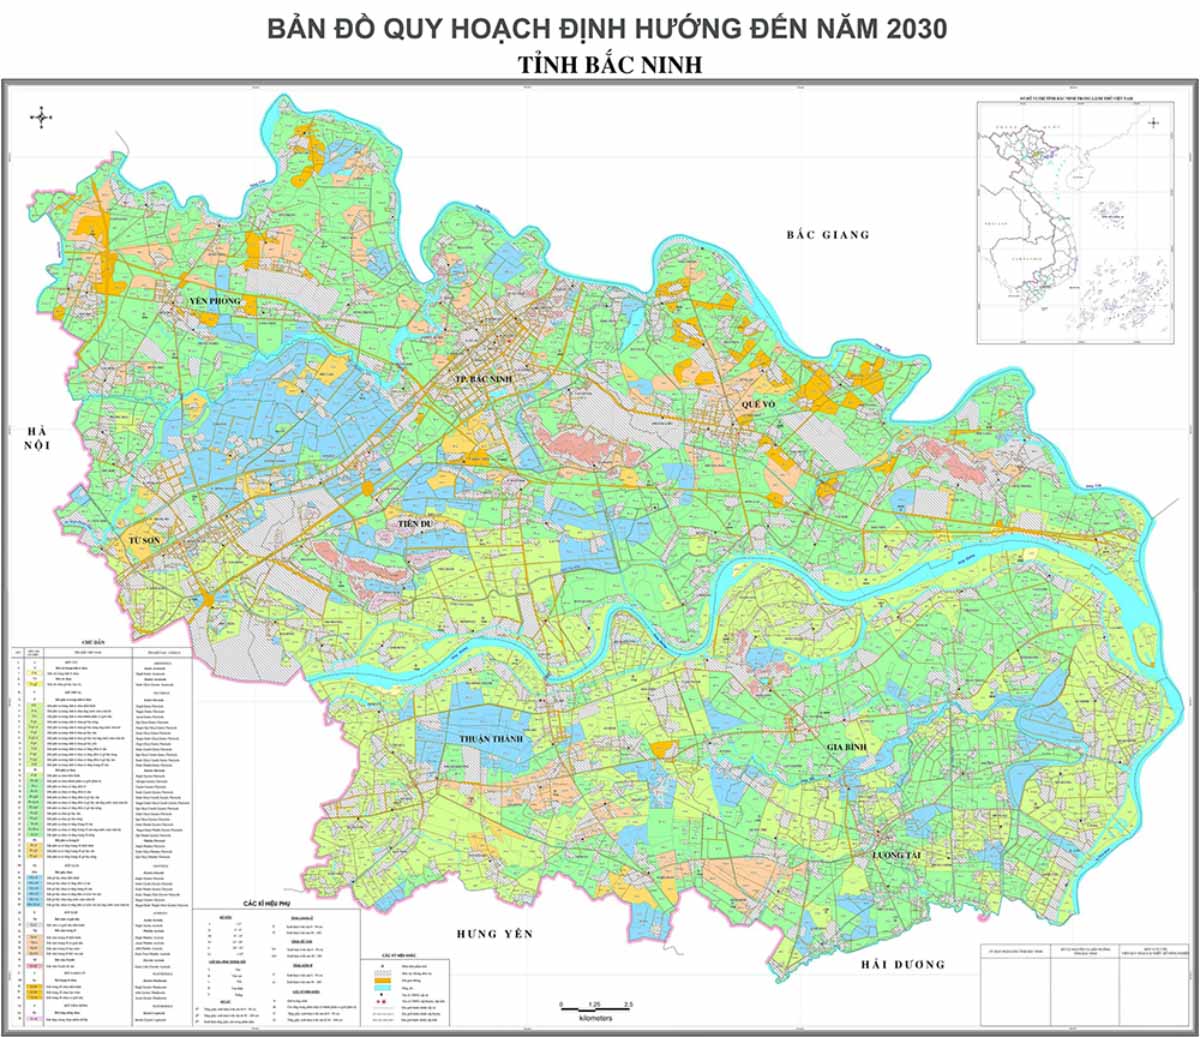 Quy hoạch Bắc Ninh 2030: Với sự phát triển nhanh chóng của kinh tế và xã hội, quy hoạch Bắc Ninh 2030 là một bản đồ chiến lược để định hướng sự phát triển bền vững của tỉnh. Với việc đẩy mạnh hạ tầng giao thông, phát triển bền vững và quản lý chặt chẽ, Bắc Ninh sẽ tiếp tục là một trong những cánh chim đầu đàn của đất nước.